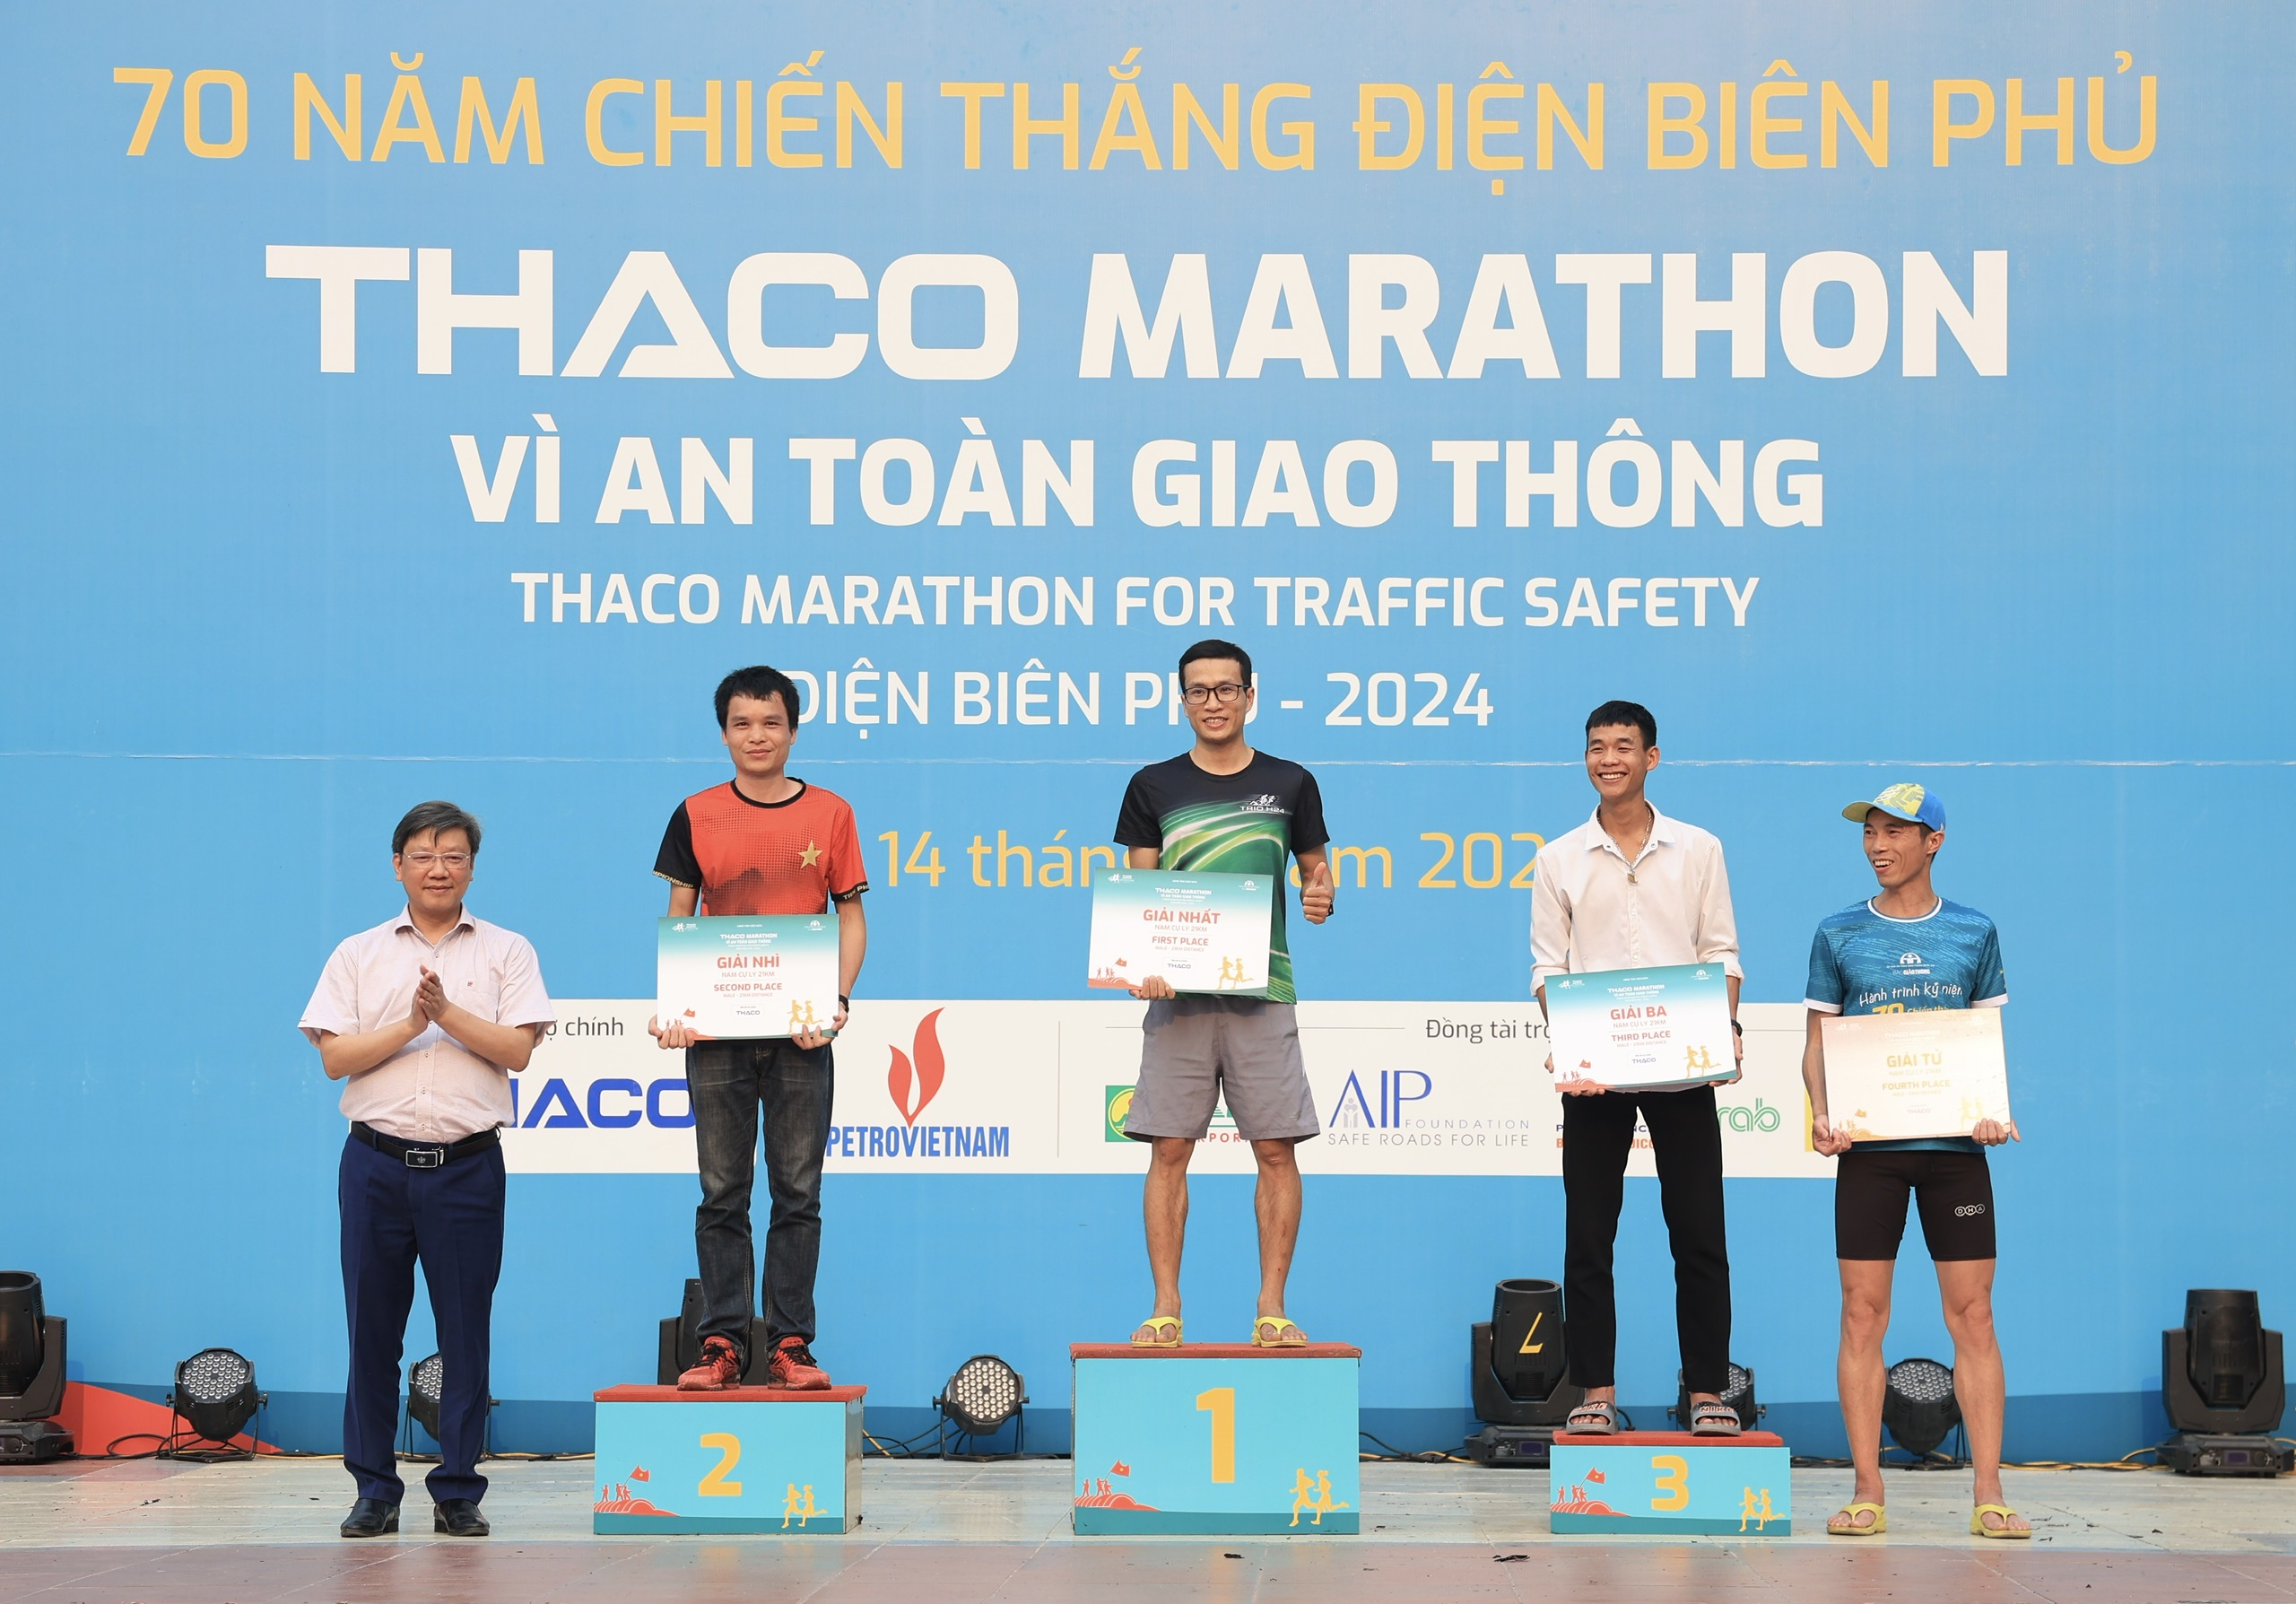 Trực tiếp: Giải THACO Marathon vì ATGT - Điện Biên Phủ 2024 thành công rực rỡ- Ảnh 7.